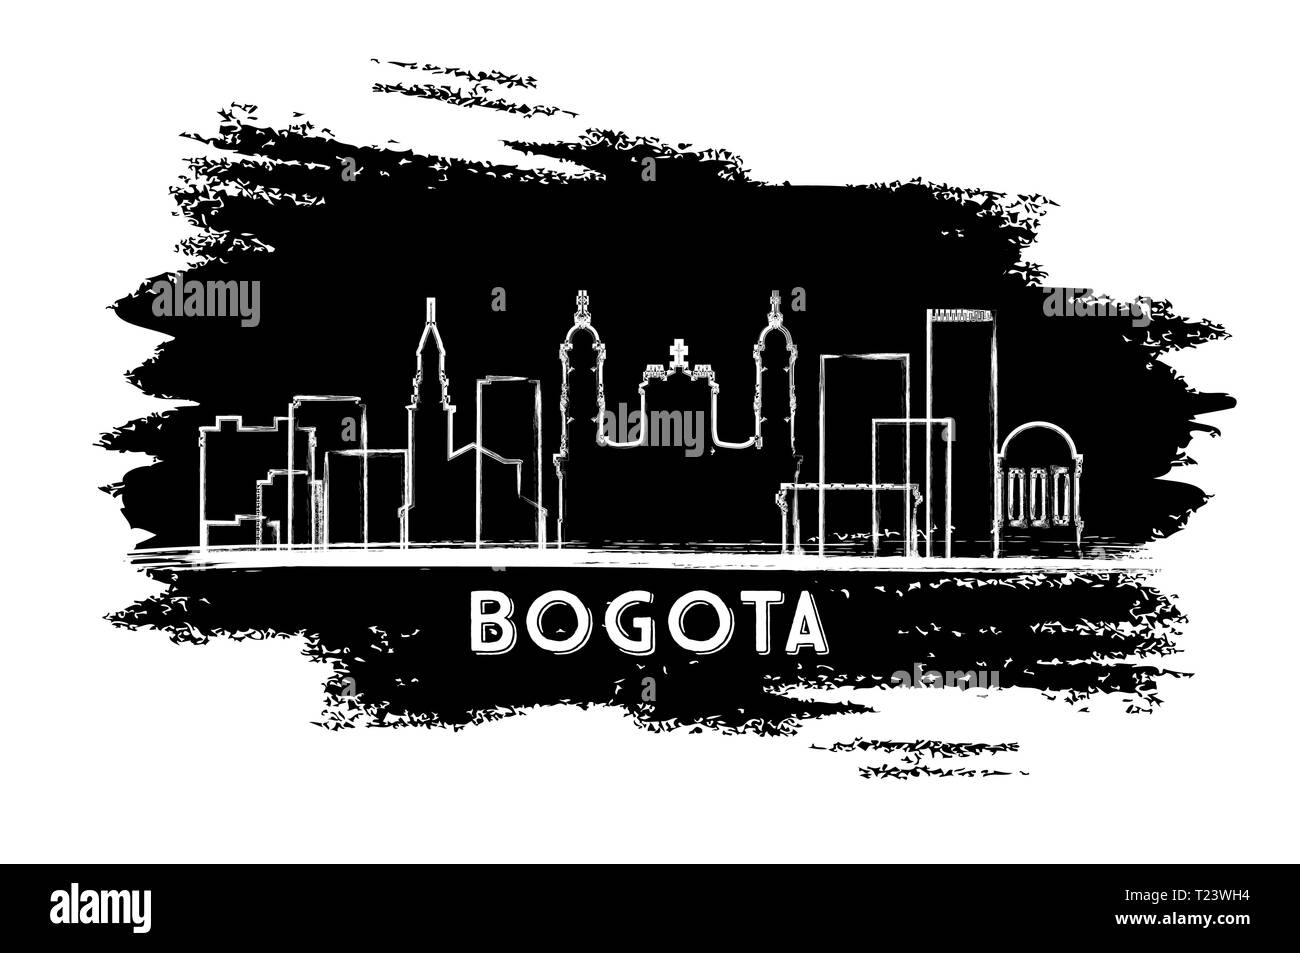 Bogota Colombie Ville Silhouette. Croquis dessinés à la main. Vector Illustration. Les voyages d'affaires et tourisme Concept avec l'architecture historique. Illustration de Vecteur